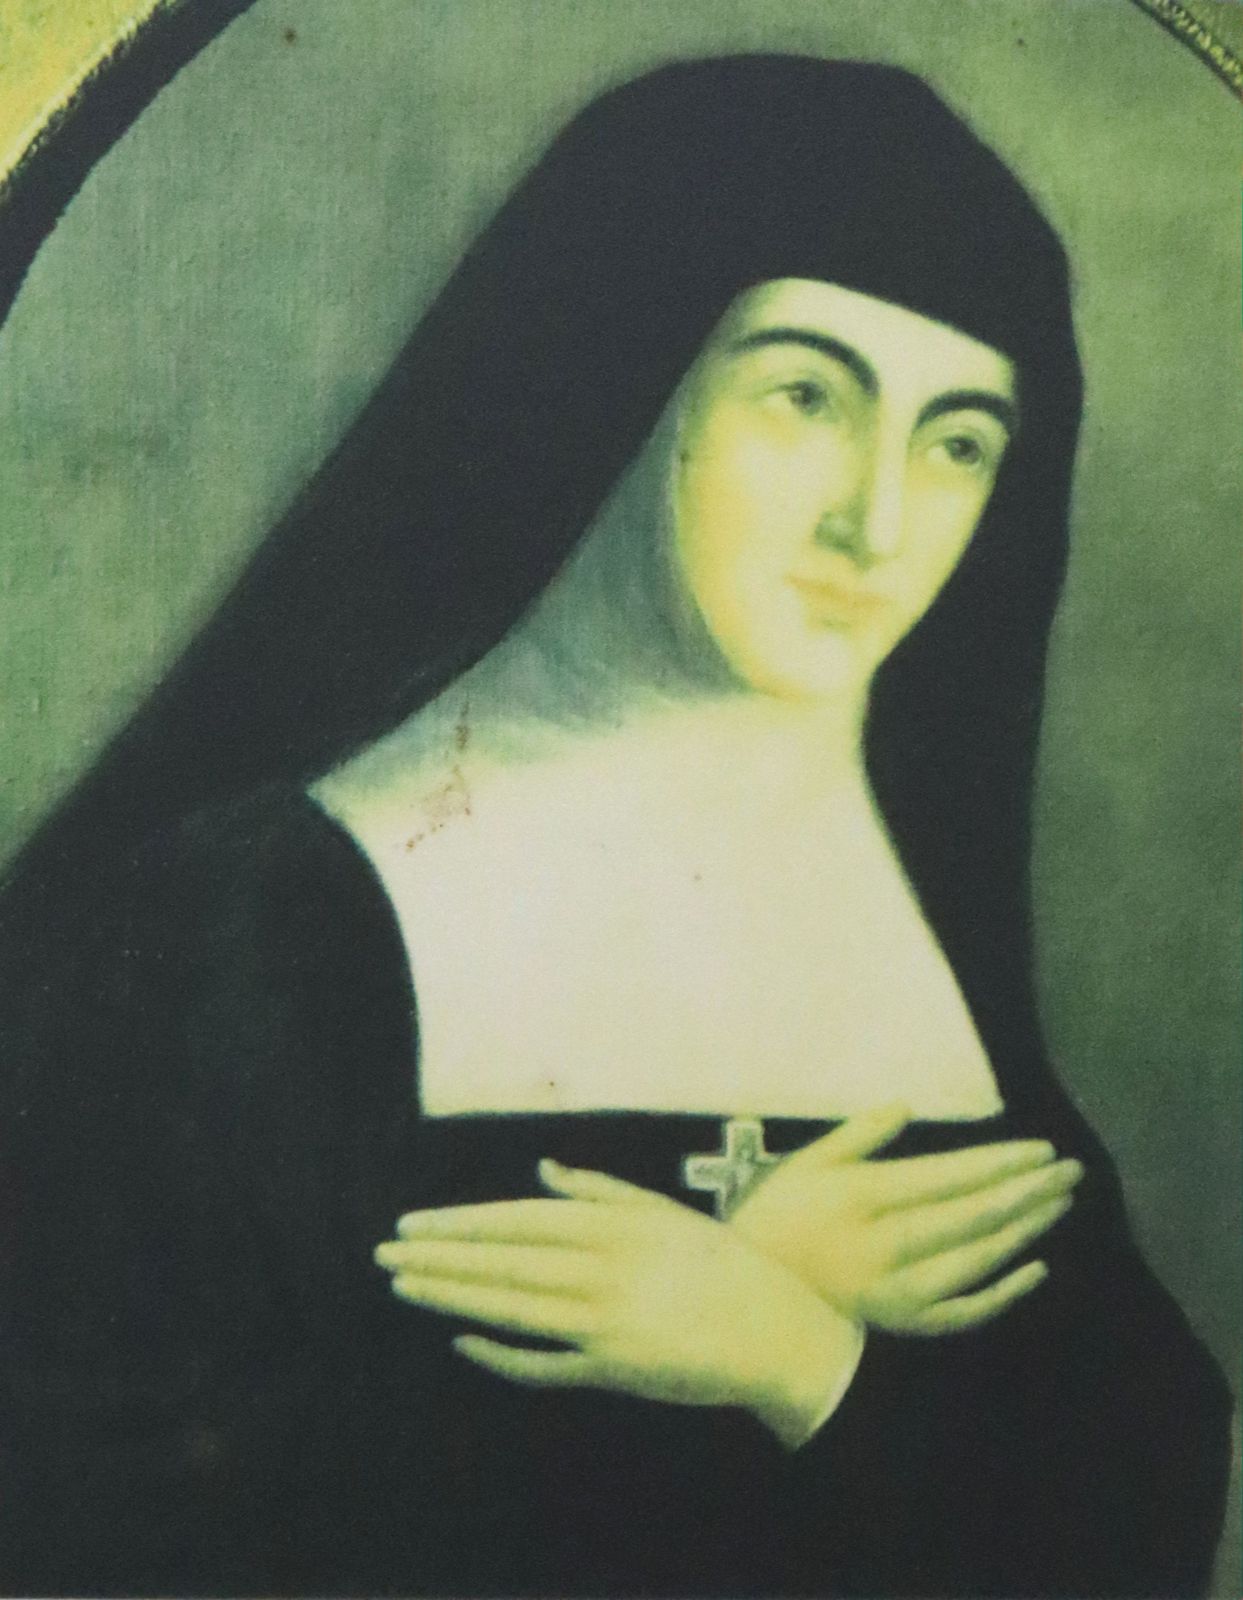 Reproduktion eines authentischen Portraits, in der Pfarrkirche in Verosvres